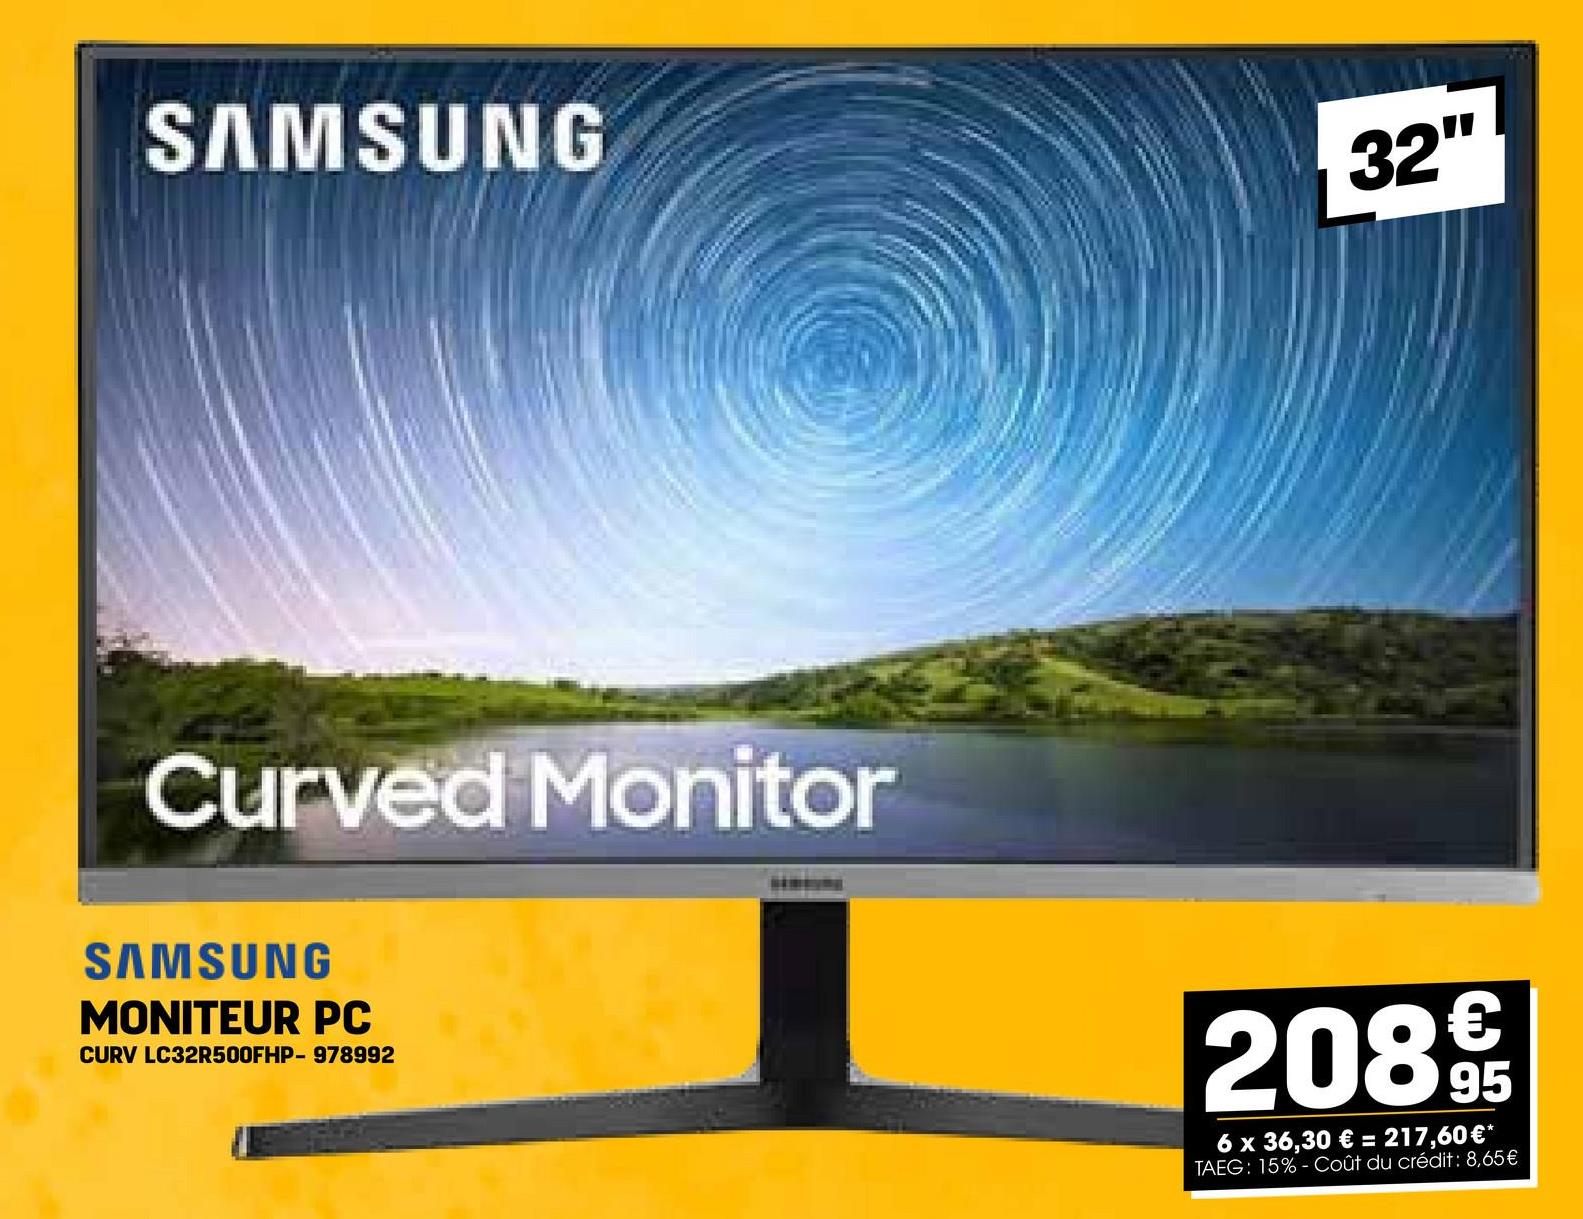 SAMSUNG
32"
Curved Monitor
SAMSUNG
MONITEUR PC
CURV LC32R500FHP- 978992
208€
6 x 36,30 € = 217,60€*
TAEG: 15%-Coût du crédit: 8,65€